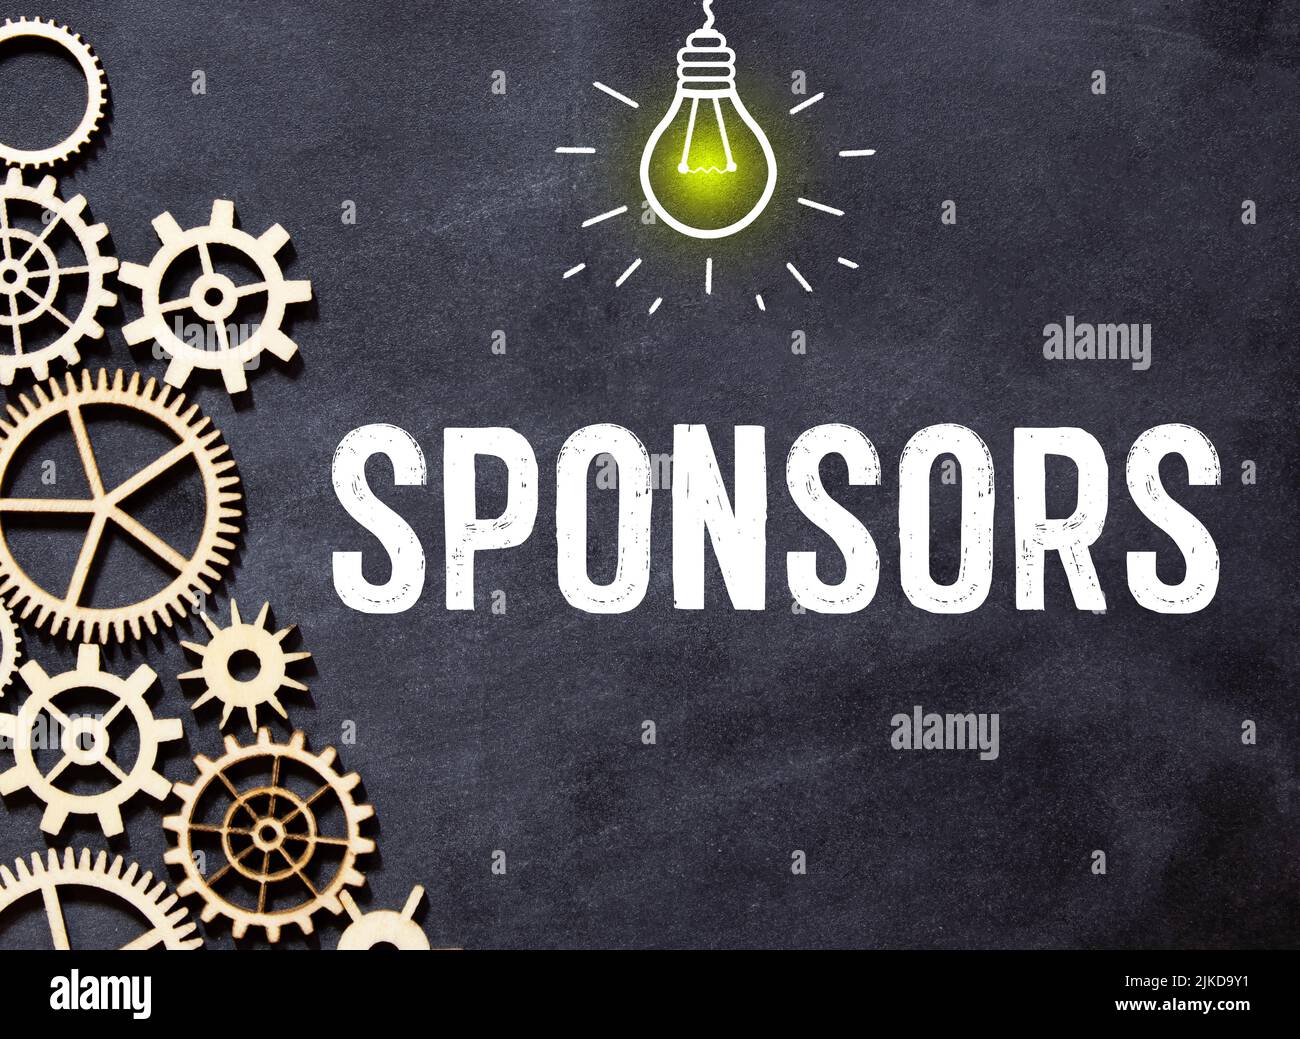 Sponsoring - Wort aus Holzblöcken mit Briefen, finanziell unterstützendes Sponsoring Fundraising-Konzept, Draufsicht auf grauem Hintergrund Stockfoto